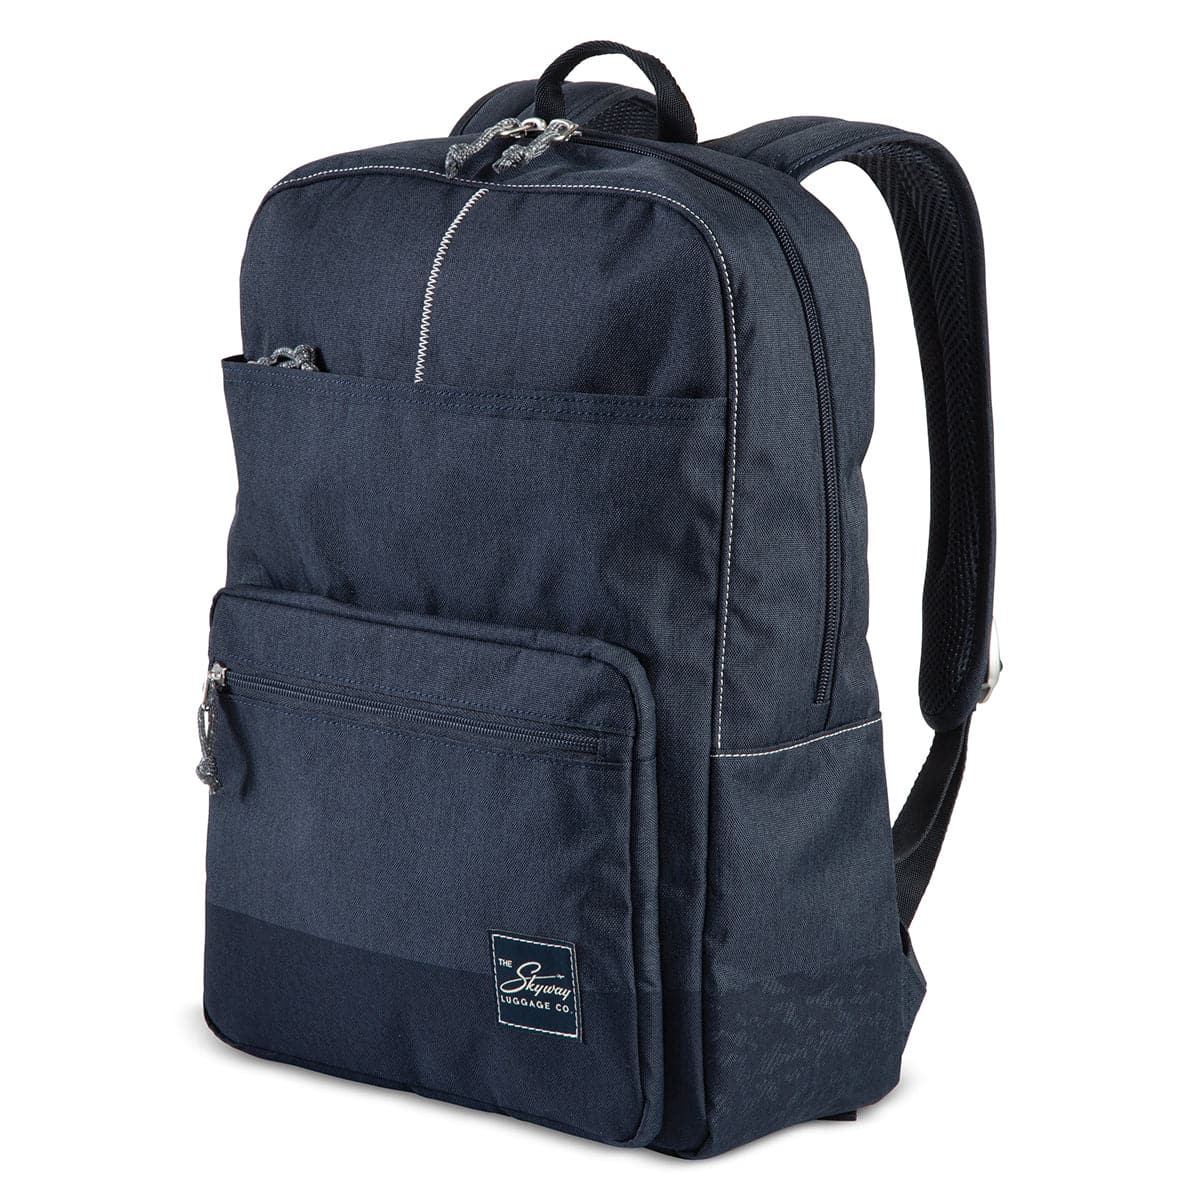 Skyway Rainier Simple Backpack - 16L